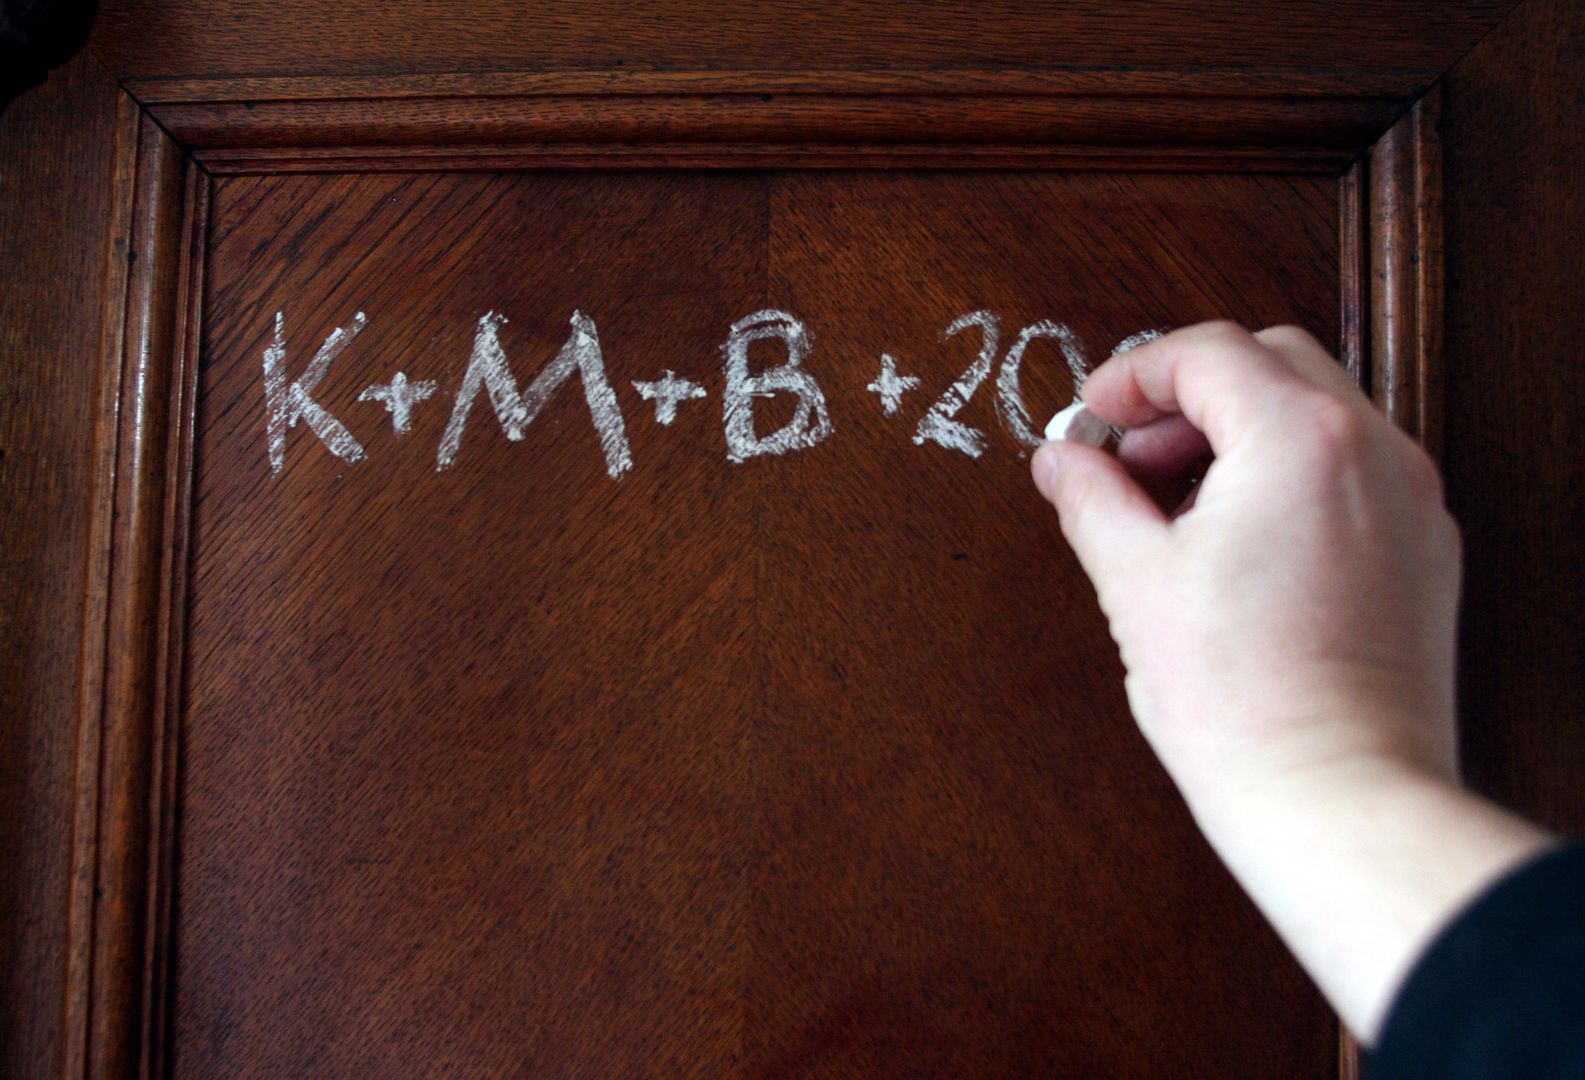 Piszesz na drzwiach K+M+B? Sprawdź jaki popełniasz błąd!